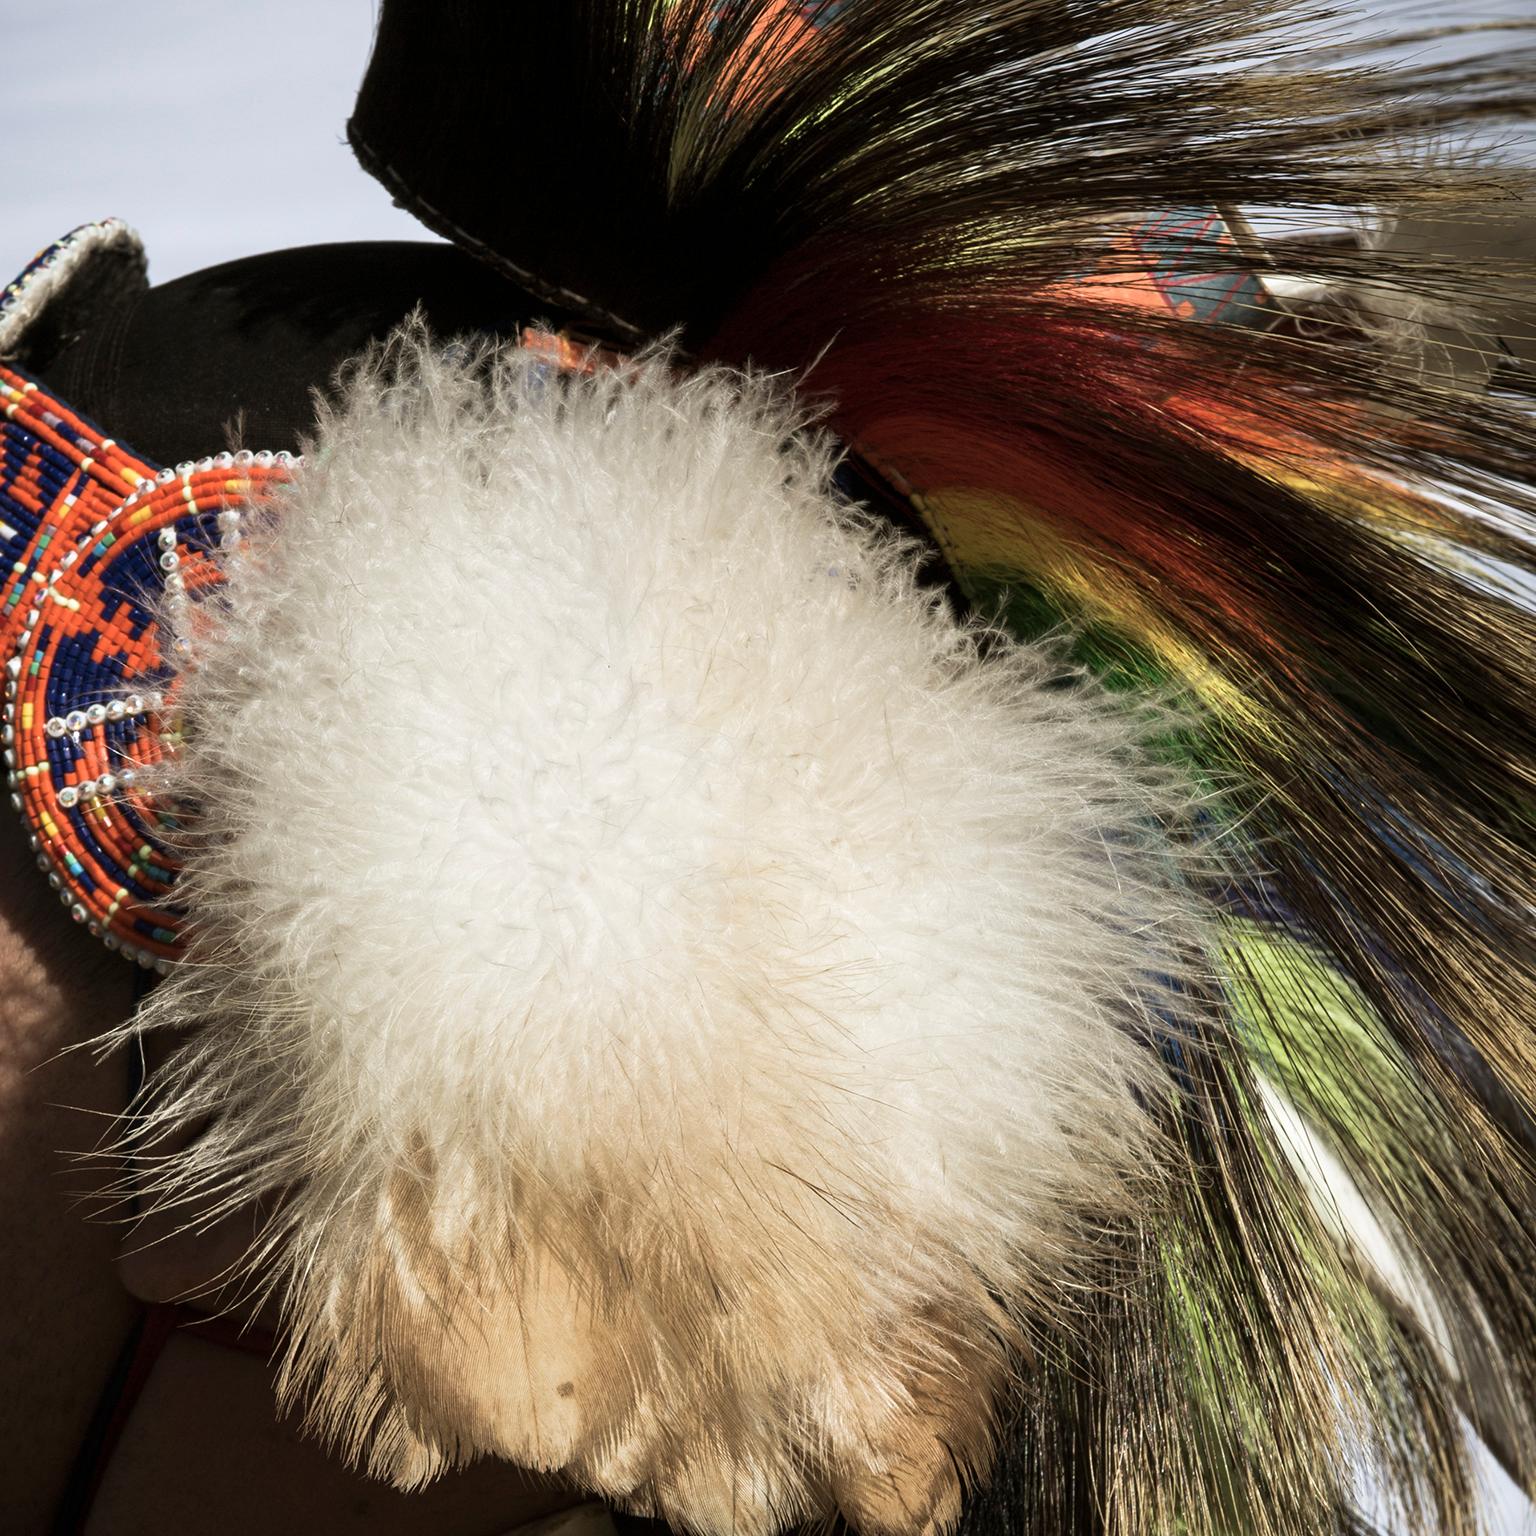 Porträt eines männlichen Tänzers der First Nations in traditioneller nordamerikanischer Tracht, 2017

Kanada, Ontario, Saint Catharines, Foto von Cosmo Condina von einem männlichen Tänzer in traditioneller nordamerikanischer Indianertracht, der bei